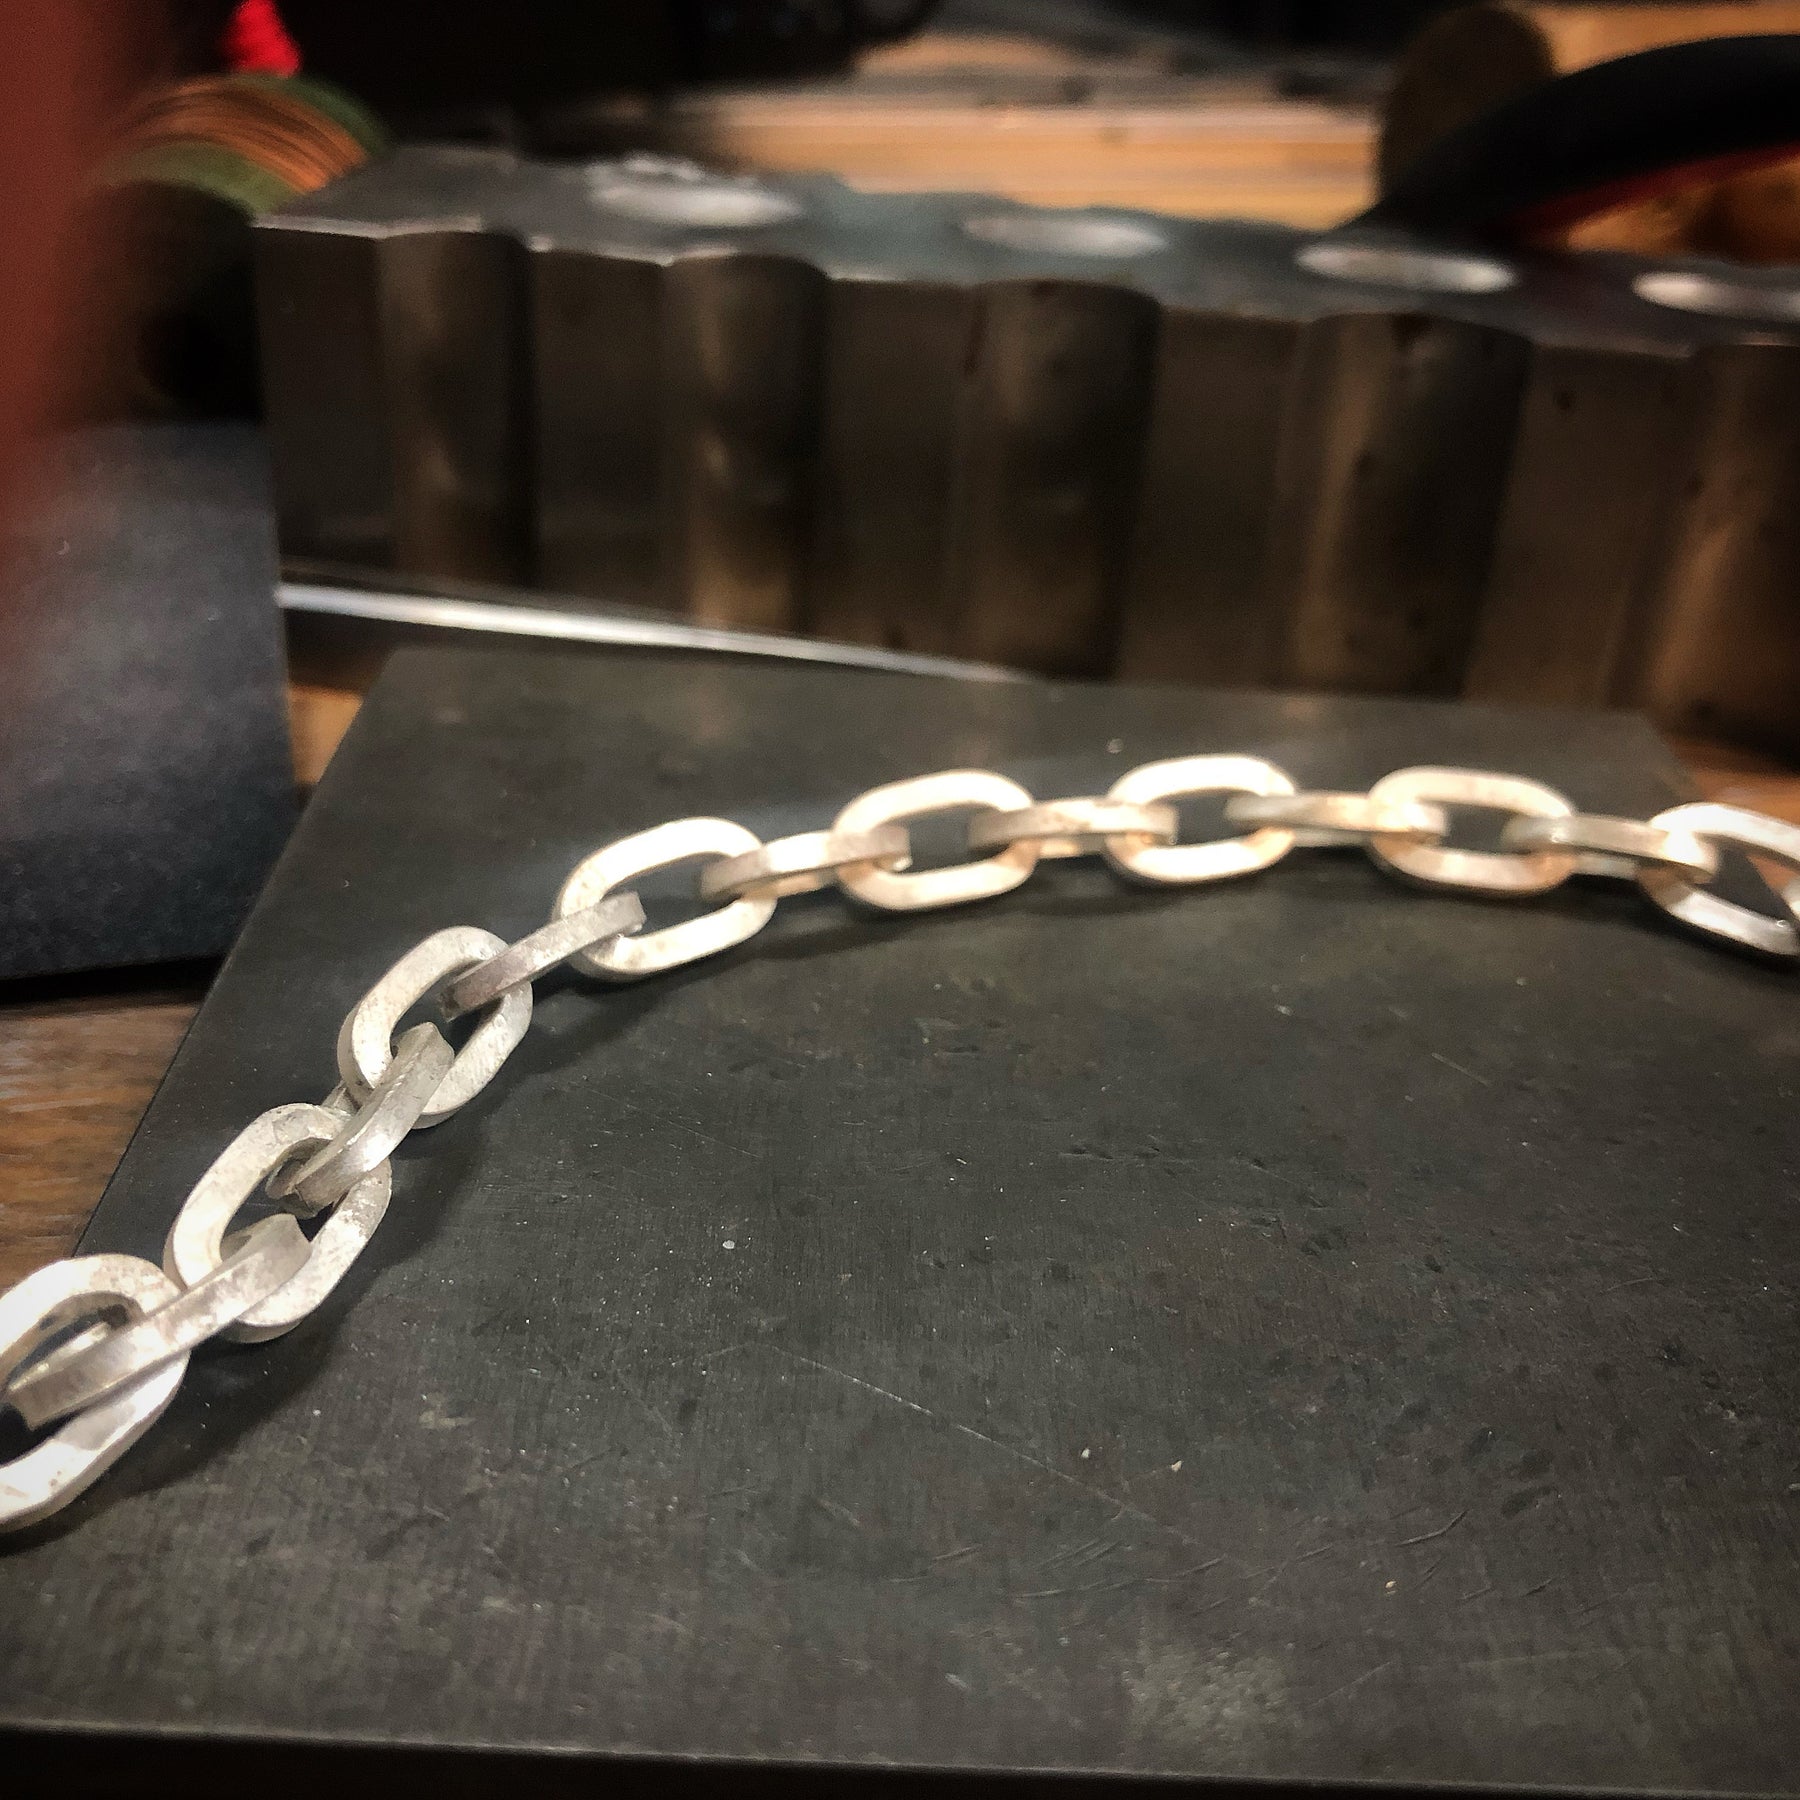 Paperclip Chain Mandrels